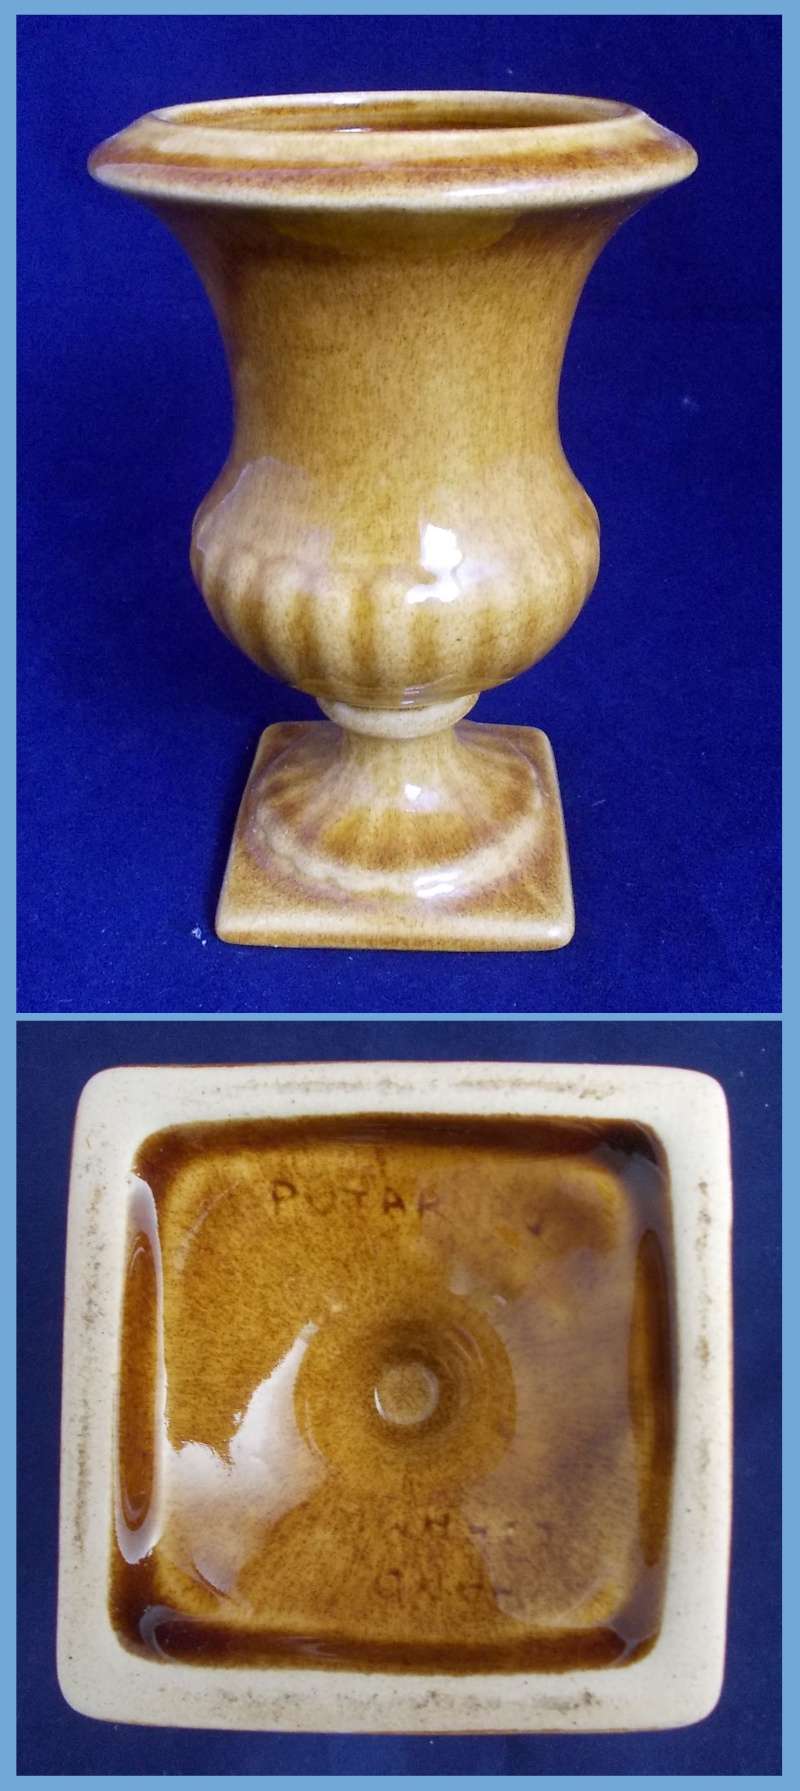 Putaruru brown urn for gallery. Dscn6328